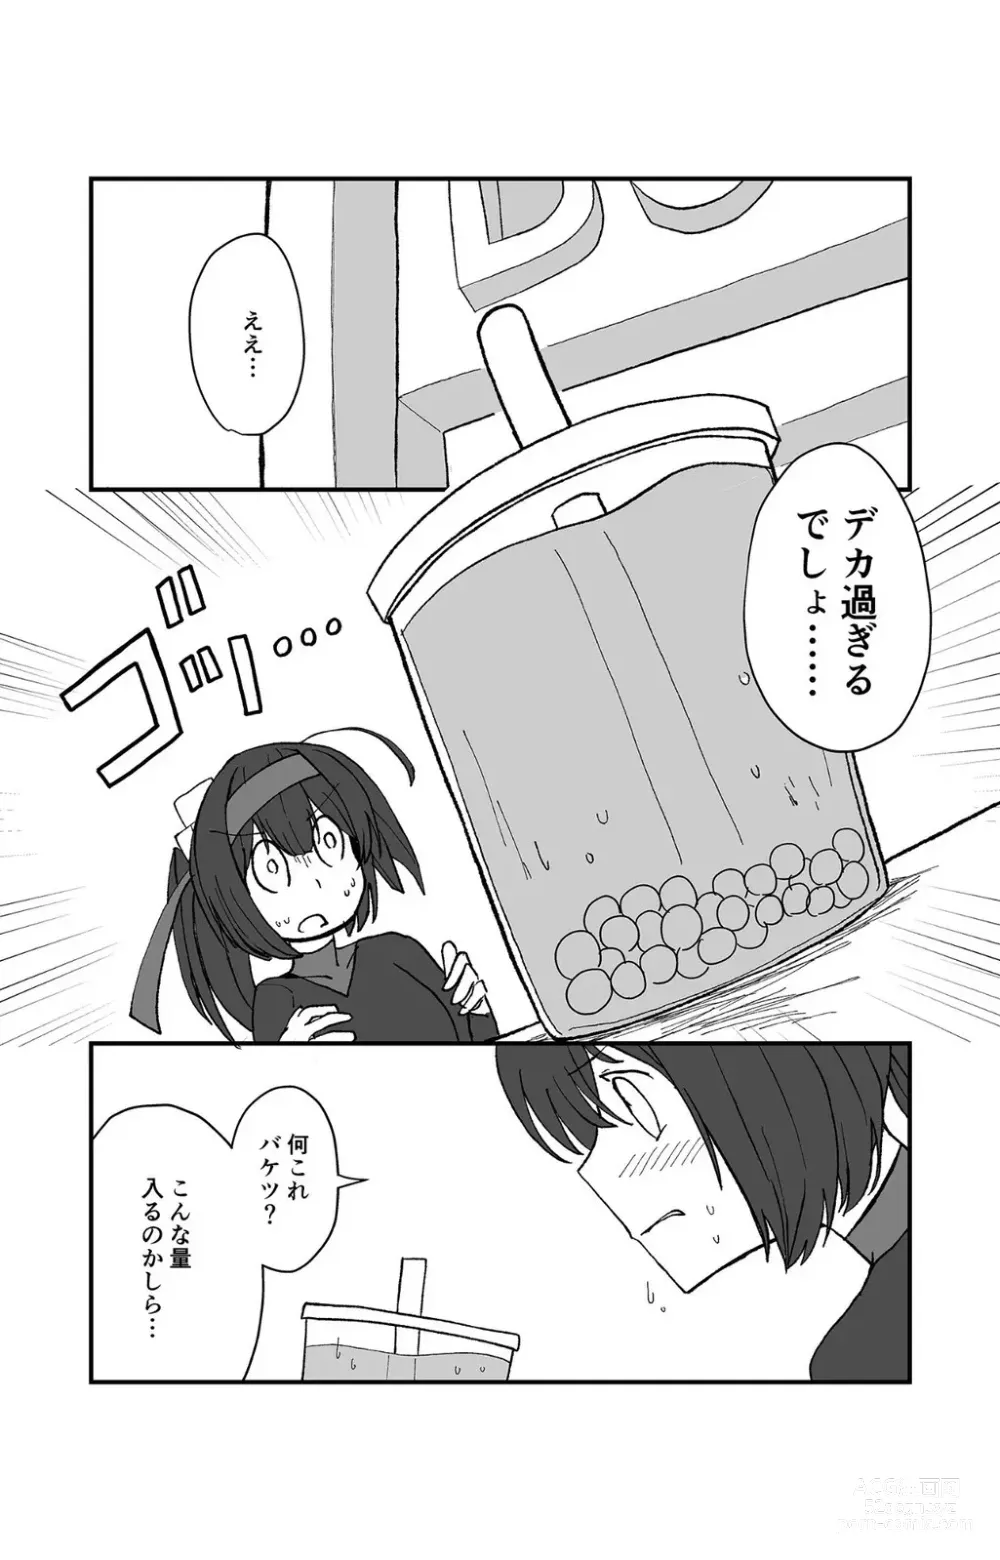 Page 4 of doujinshi Teapot Kouka